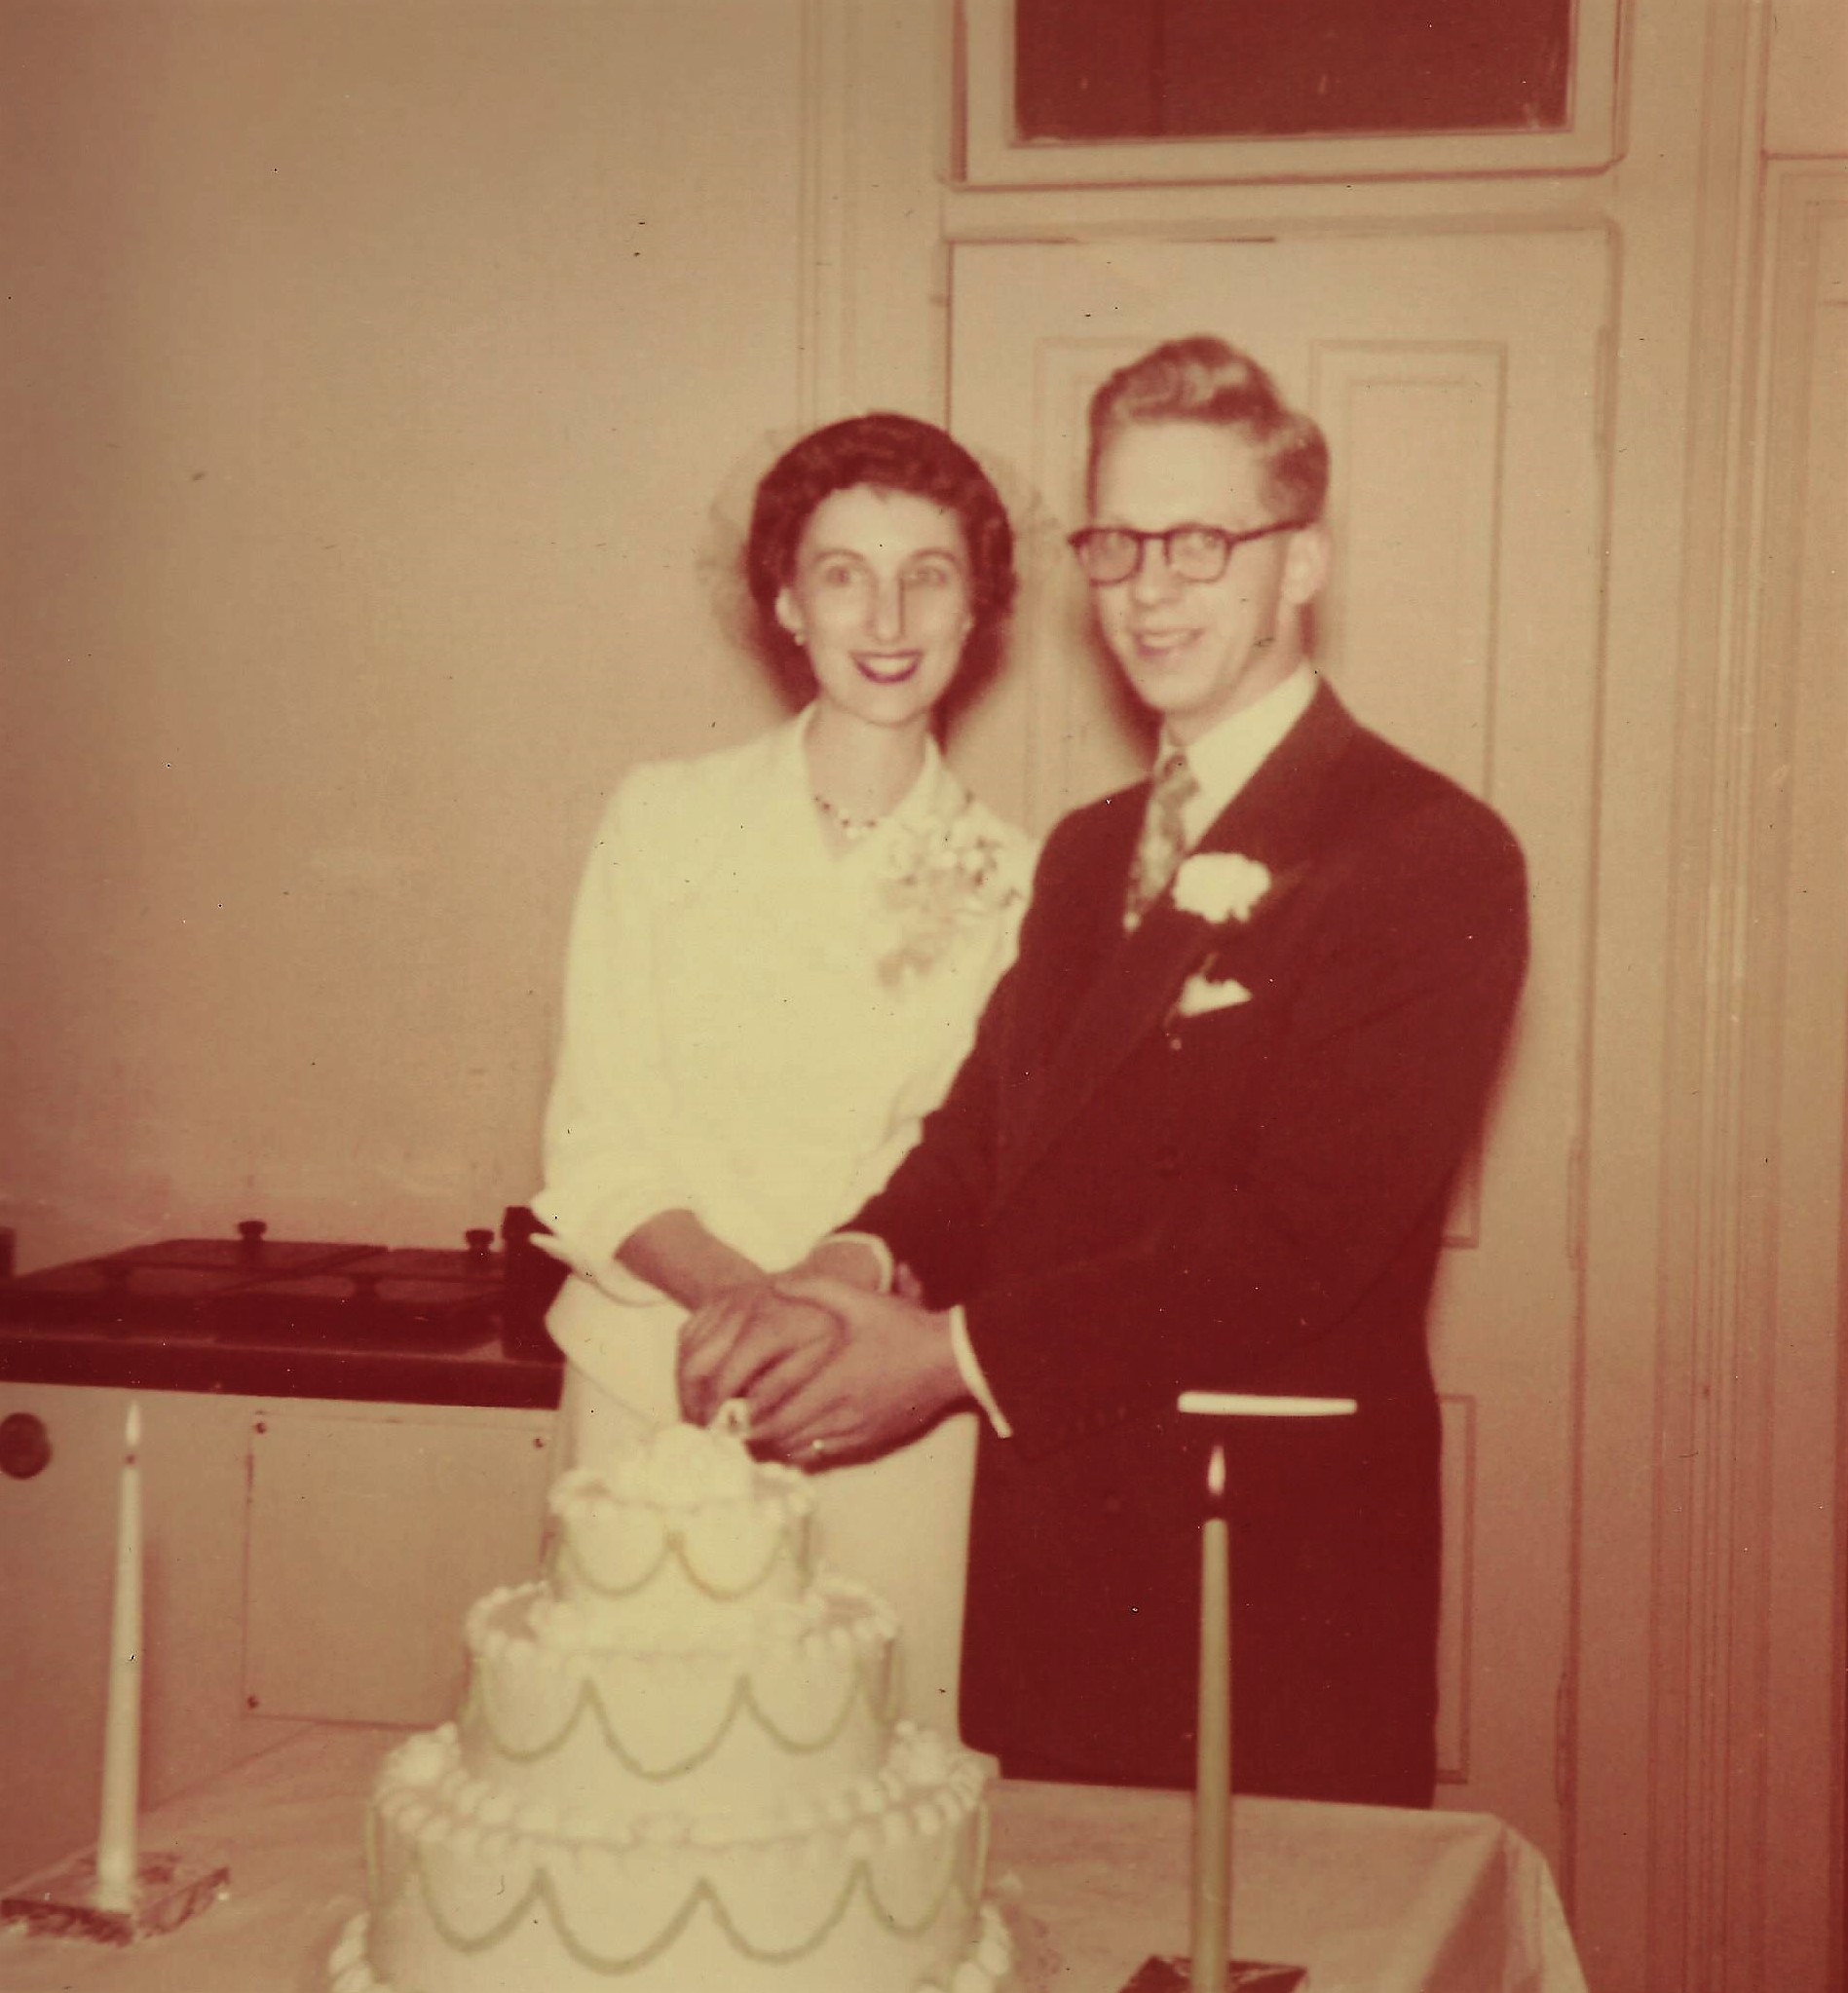 Doris & Harold's wedding picture